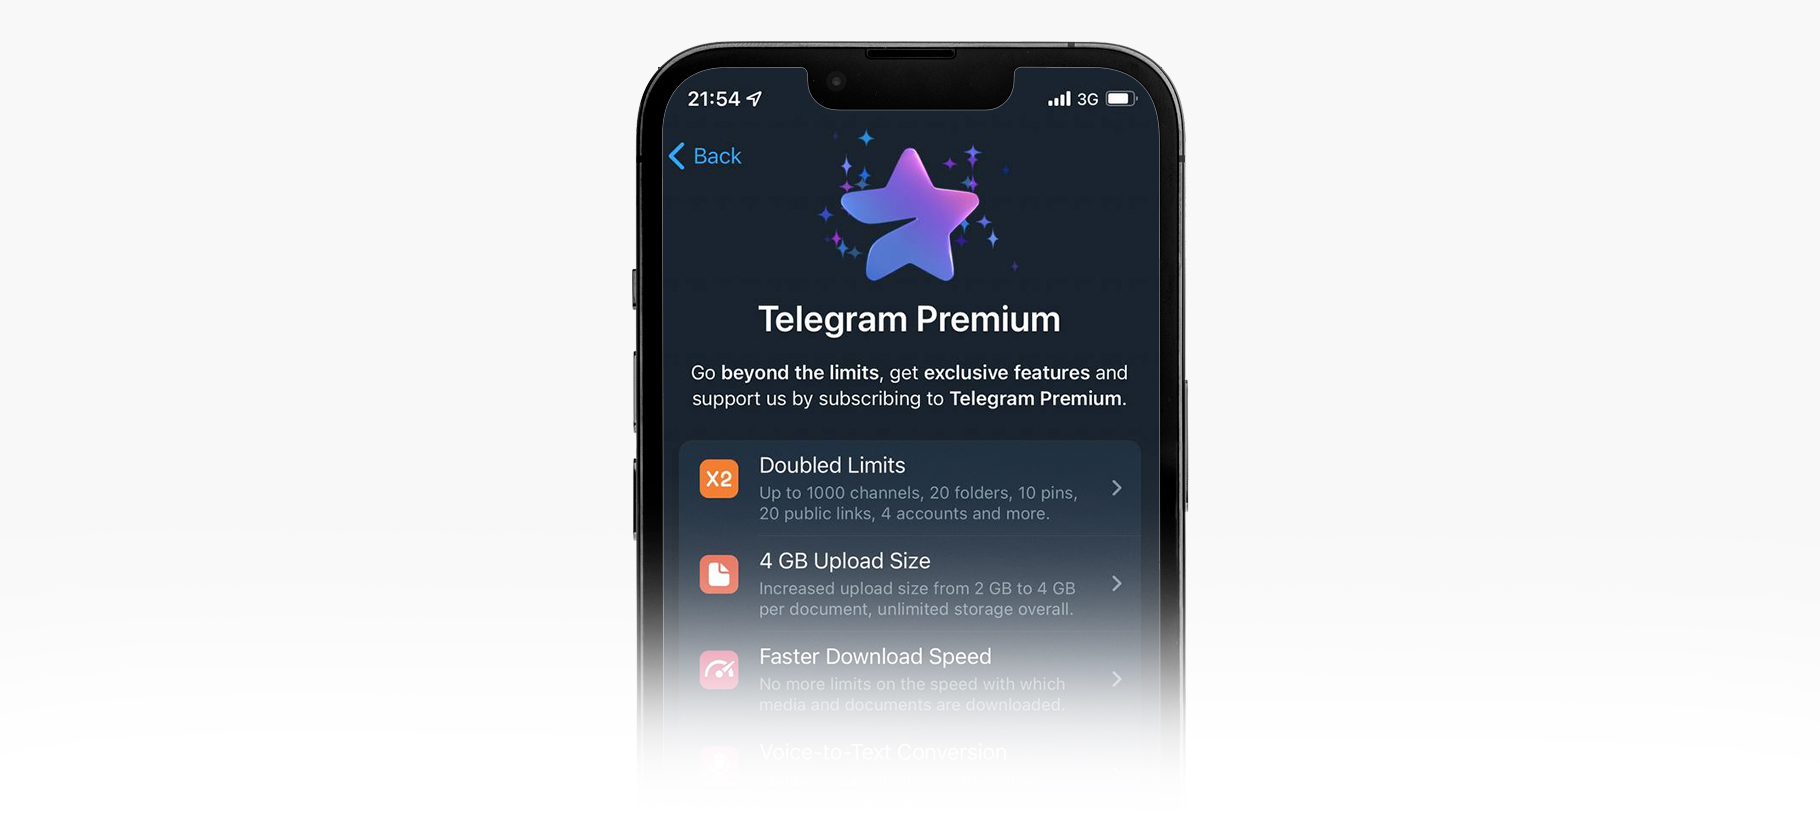 T me premiumz. Телеграм Premium. Подписка Telegram Premium. \Телеграмм премиум каналы. Звездочка телеграмм премиум.